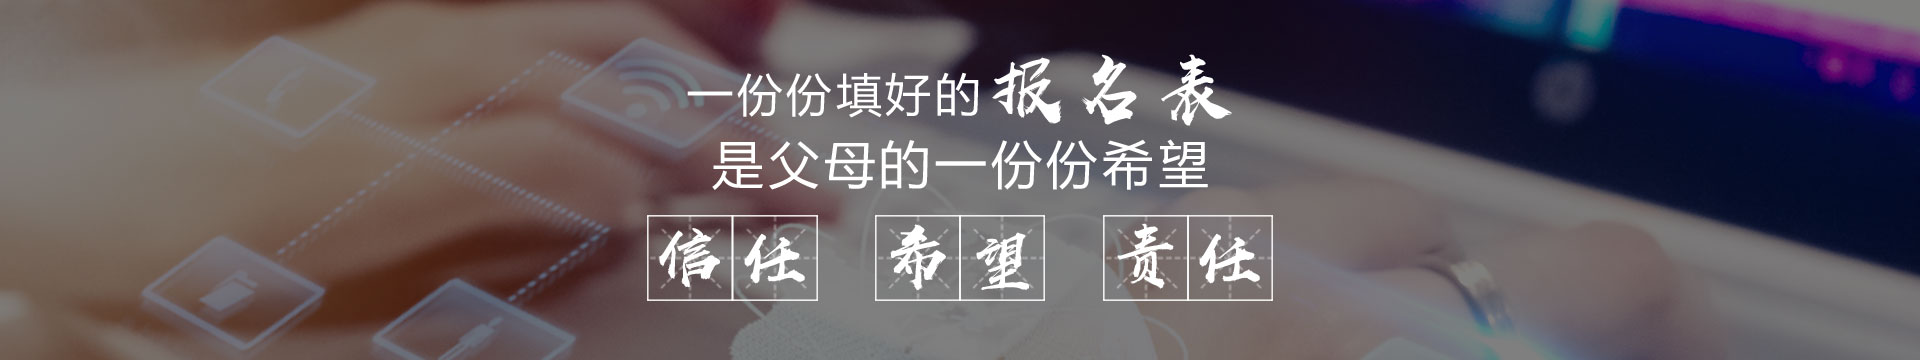 香港道教联合会邓显纪念中学在线报名